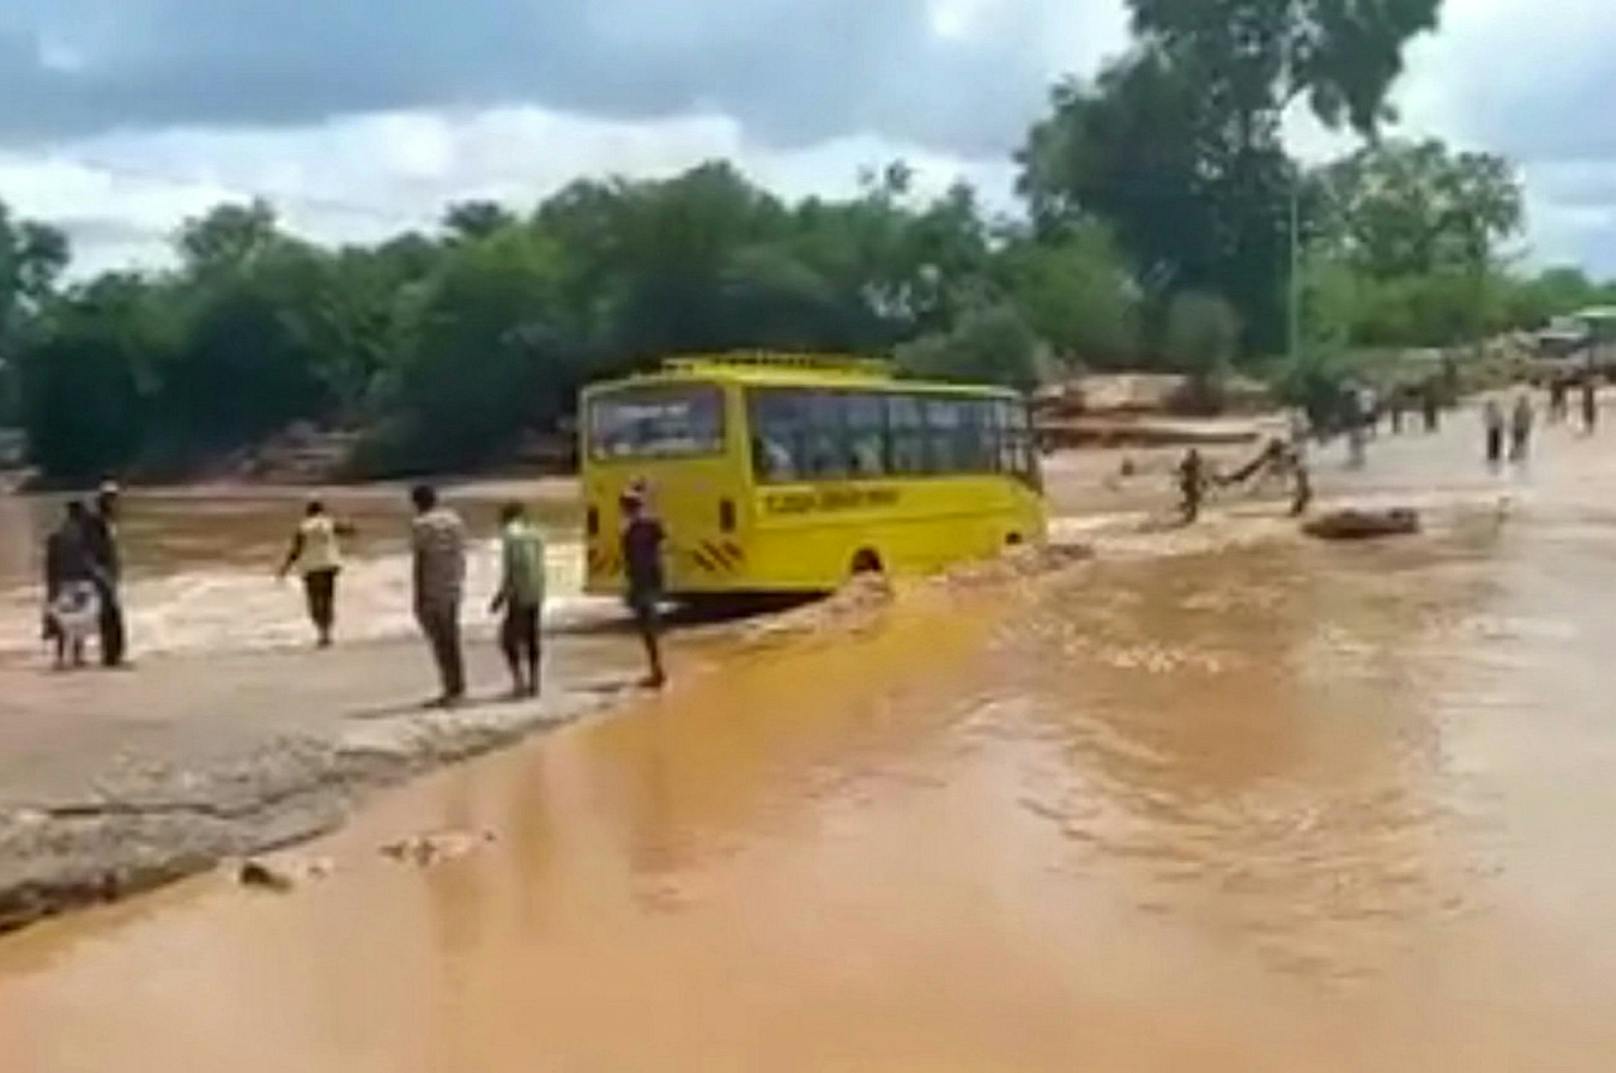 Der Bus hatte mit Hilfe von zahlreichen Passanten den Hochwasser führenden Fluss Enziu queren wollen.